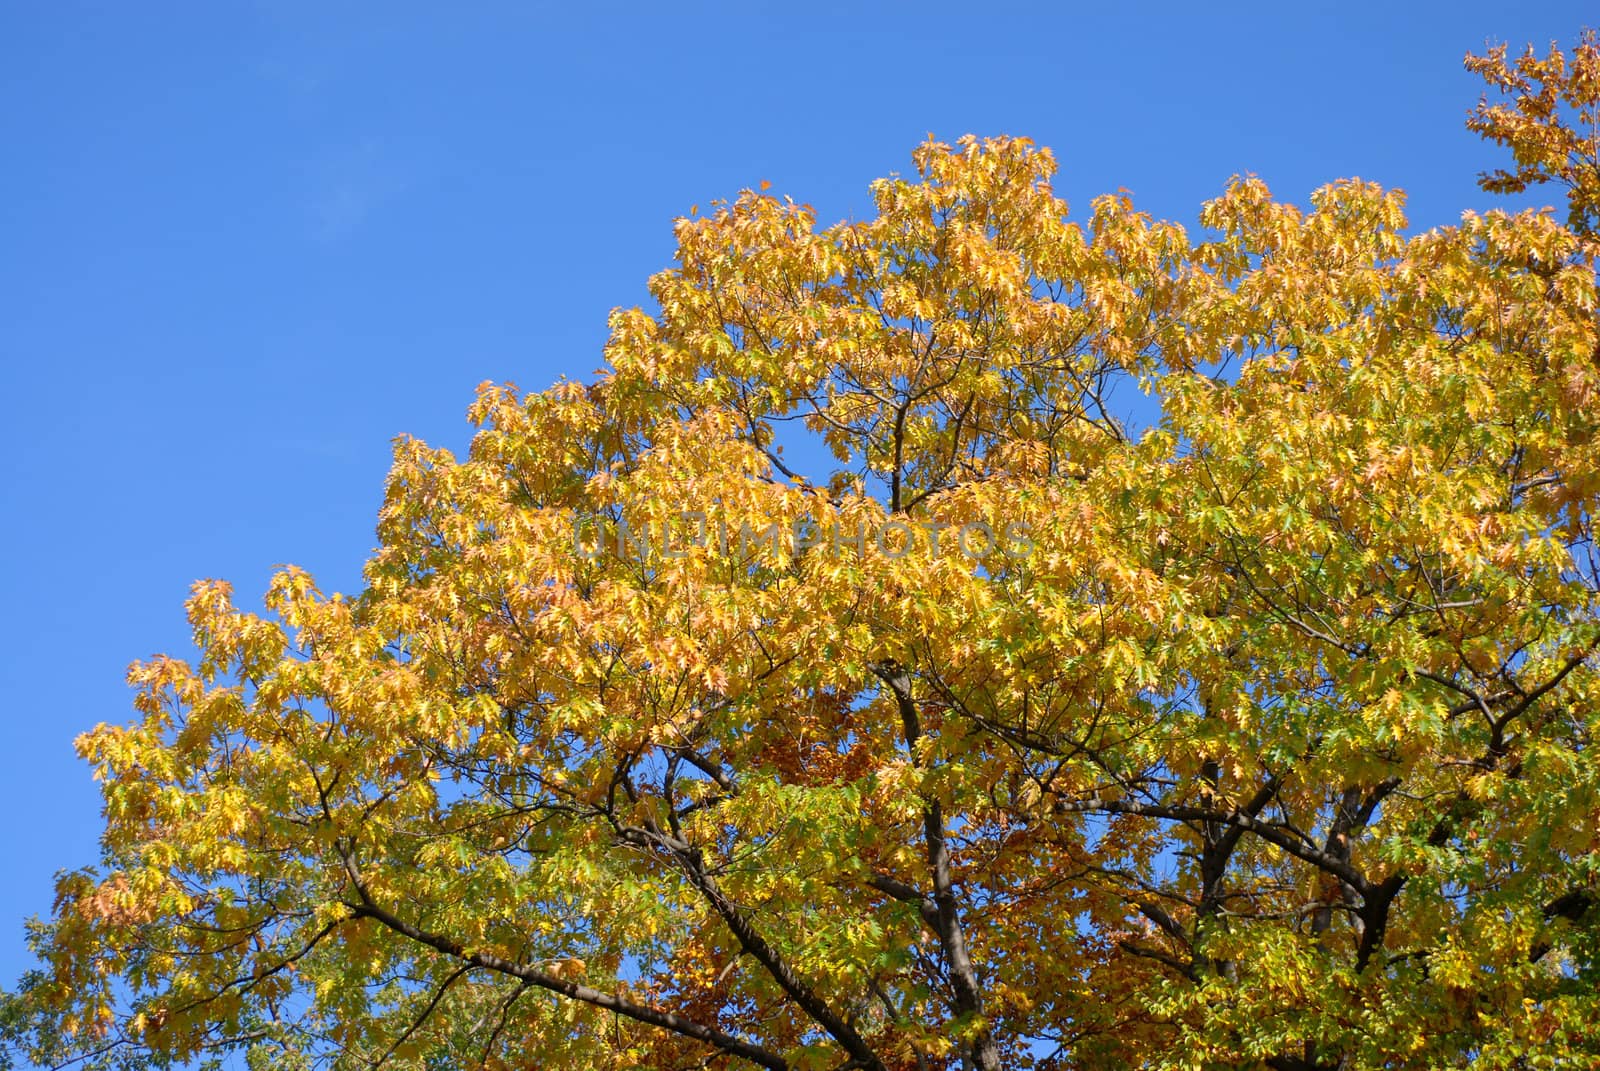 Autumn trees. by wojciechkozlowski